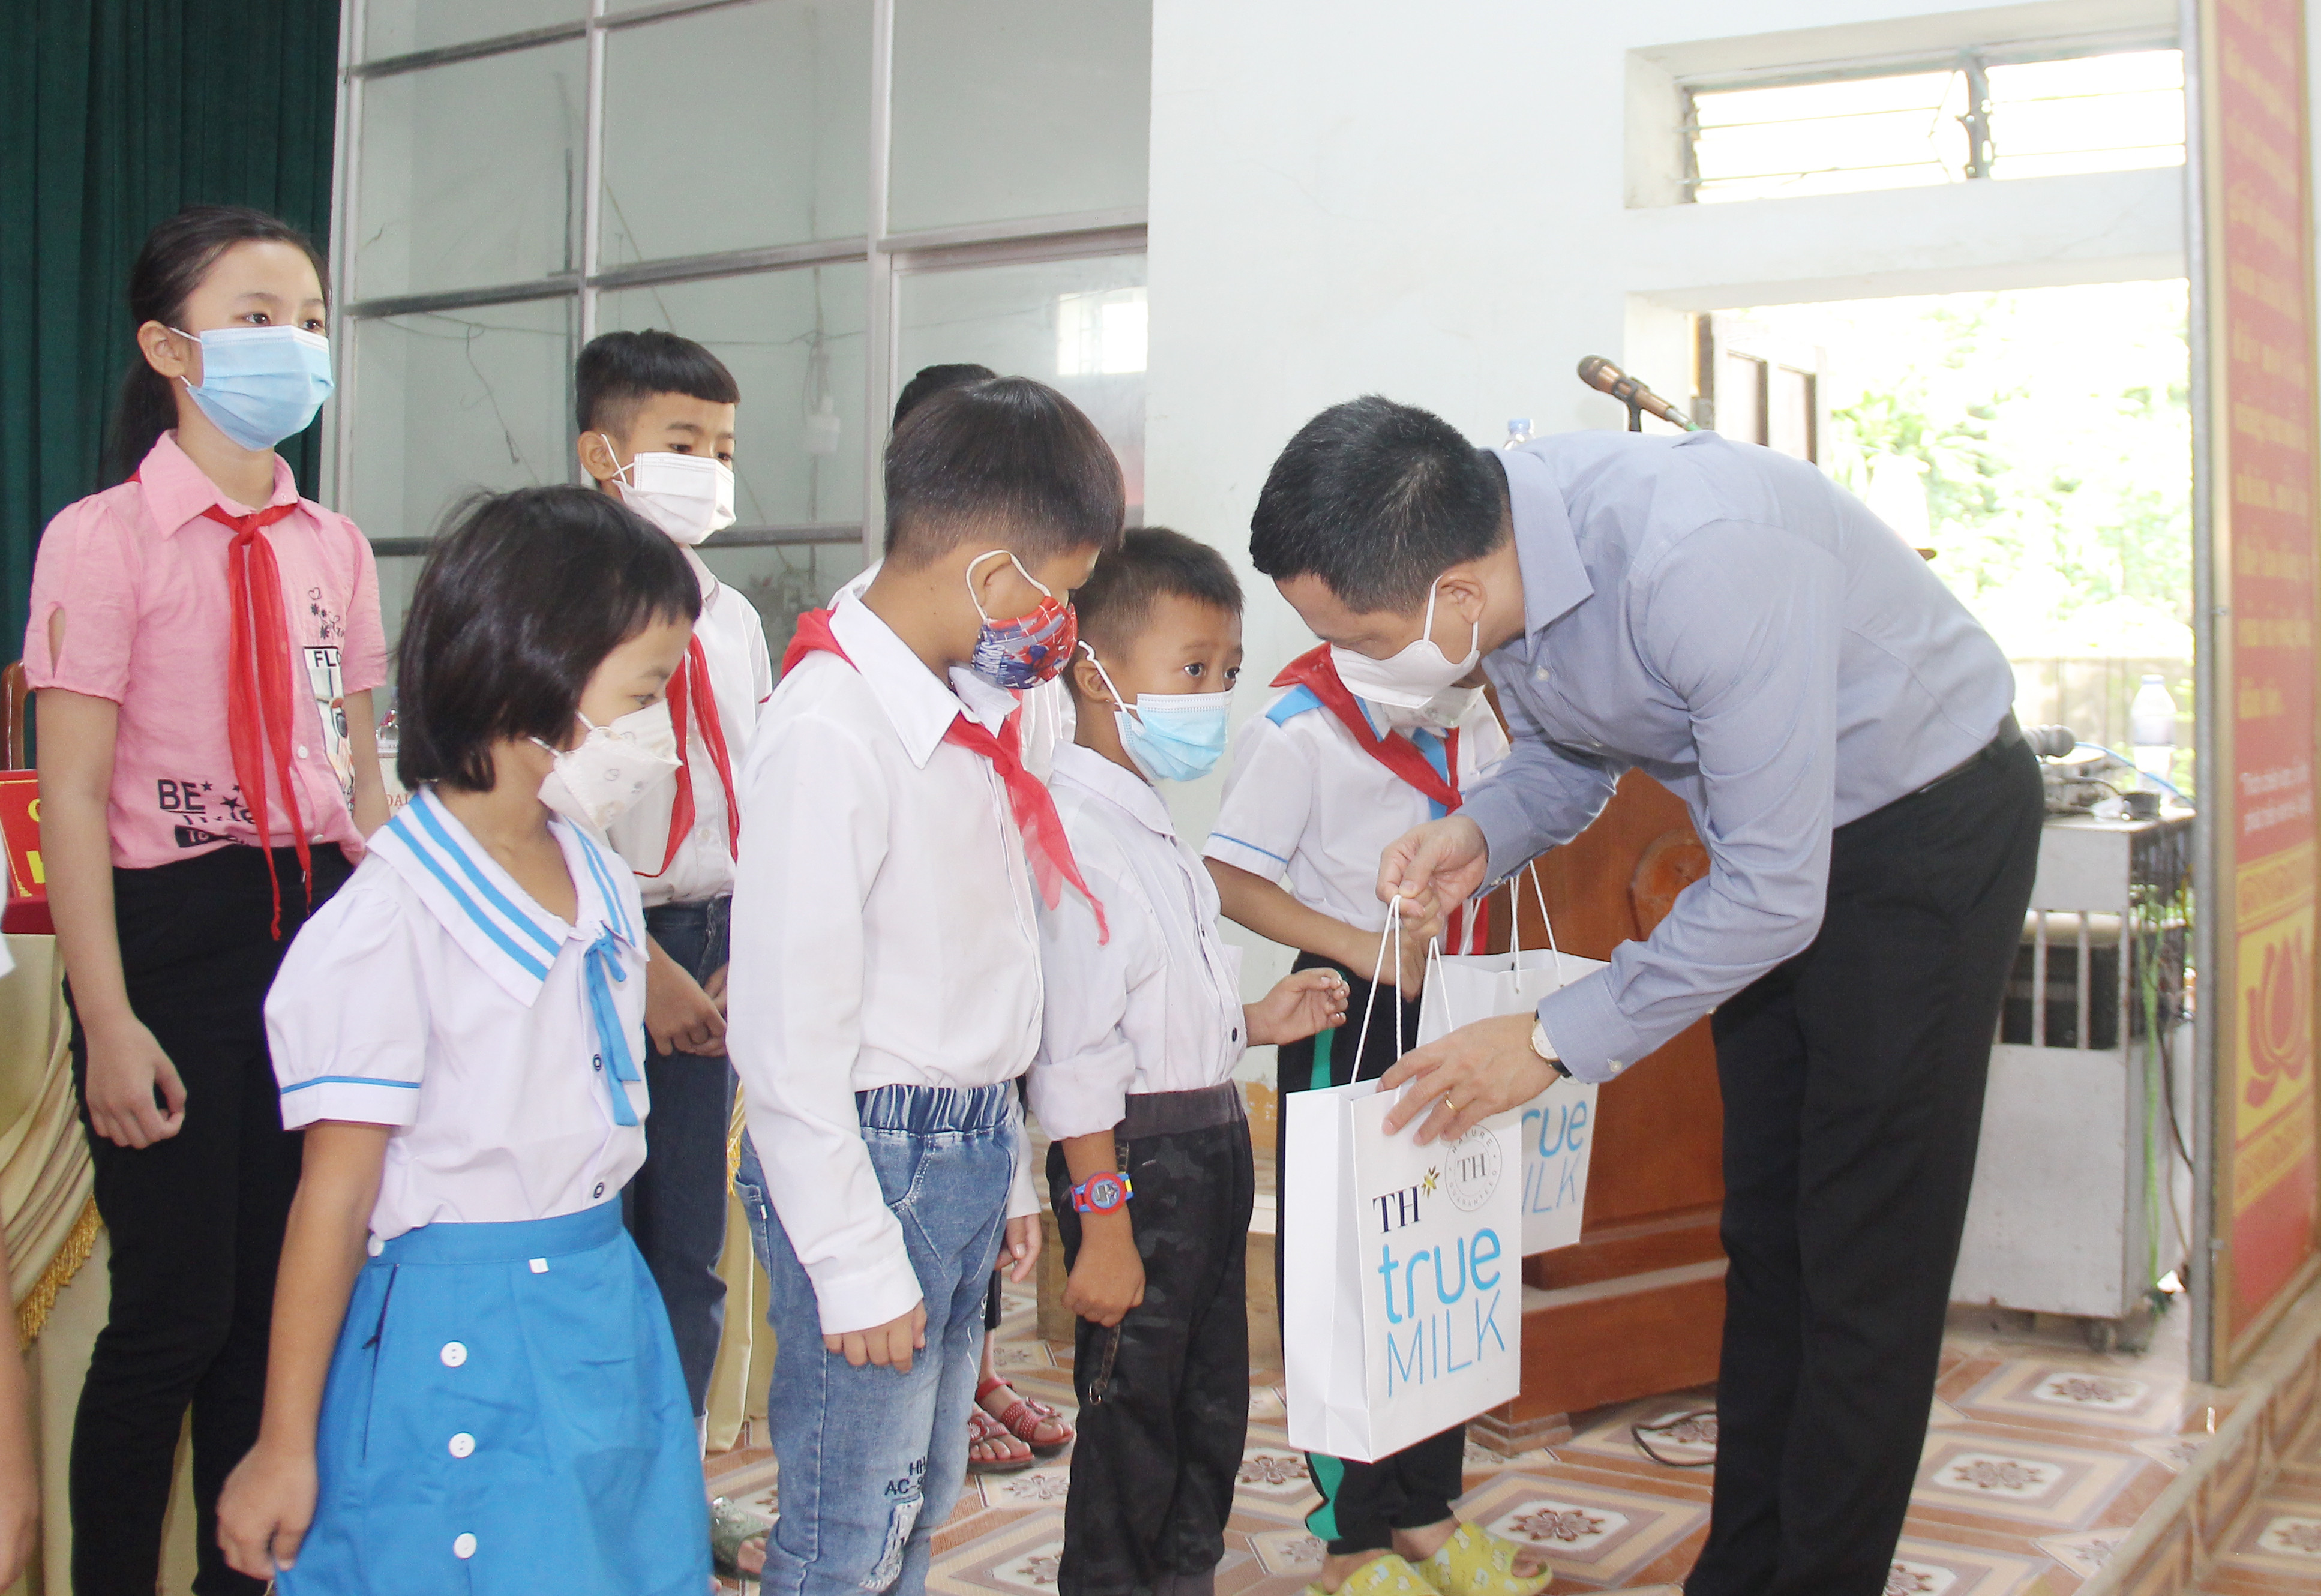 các đại biểu Quốc hội tỉnh đã trao 20 suất quà cho học sinh bậc tiểu học và trung học cơ sở trên địa bàn xã Đồng Thành. Ảnh: Mai Hoa